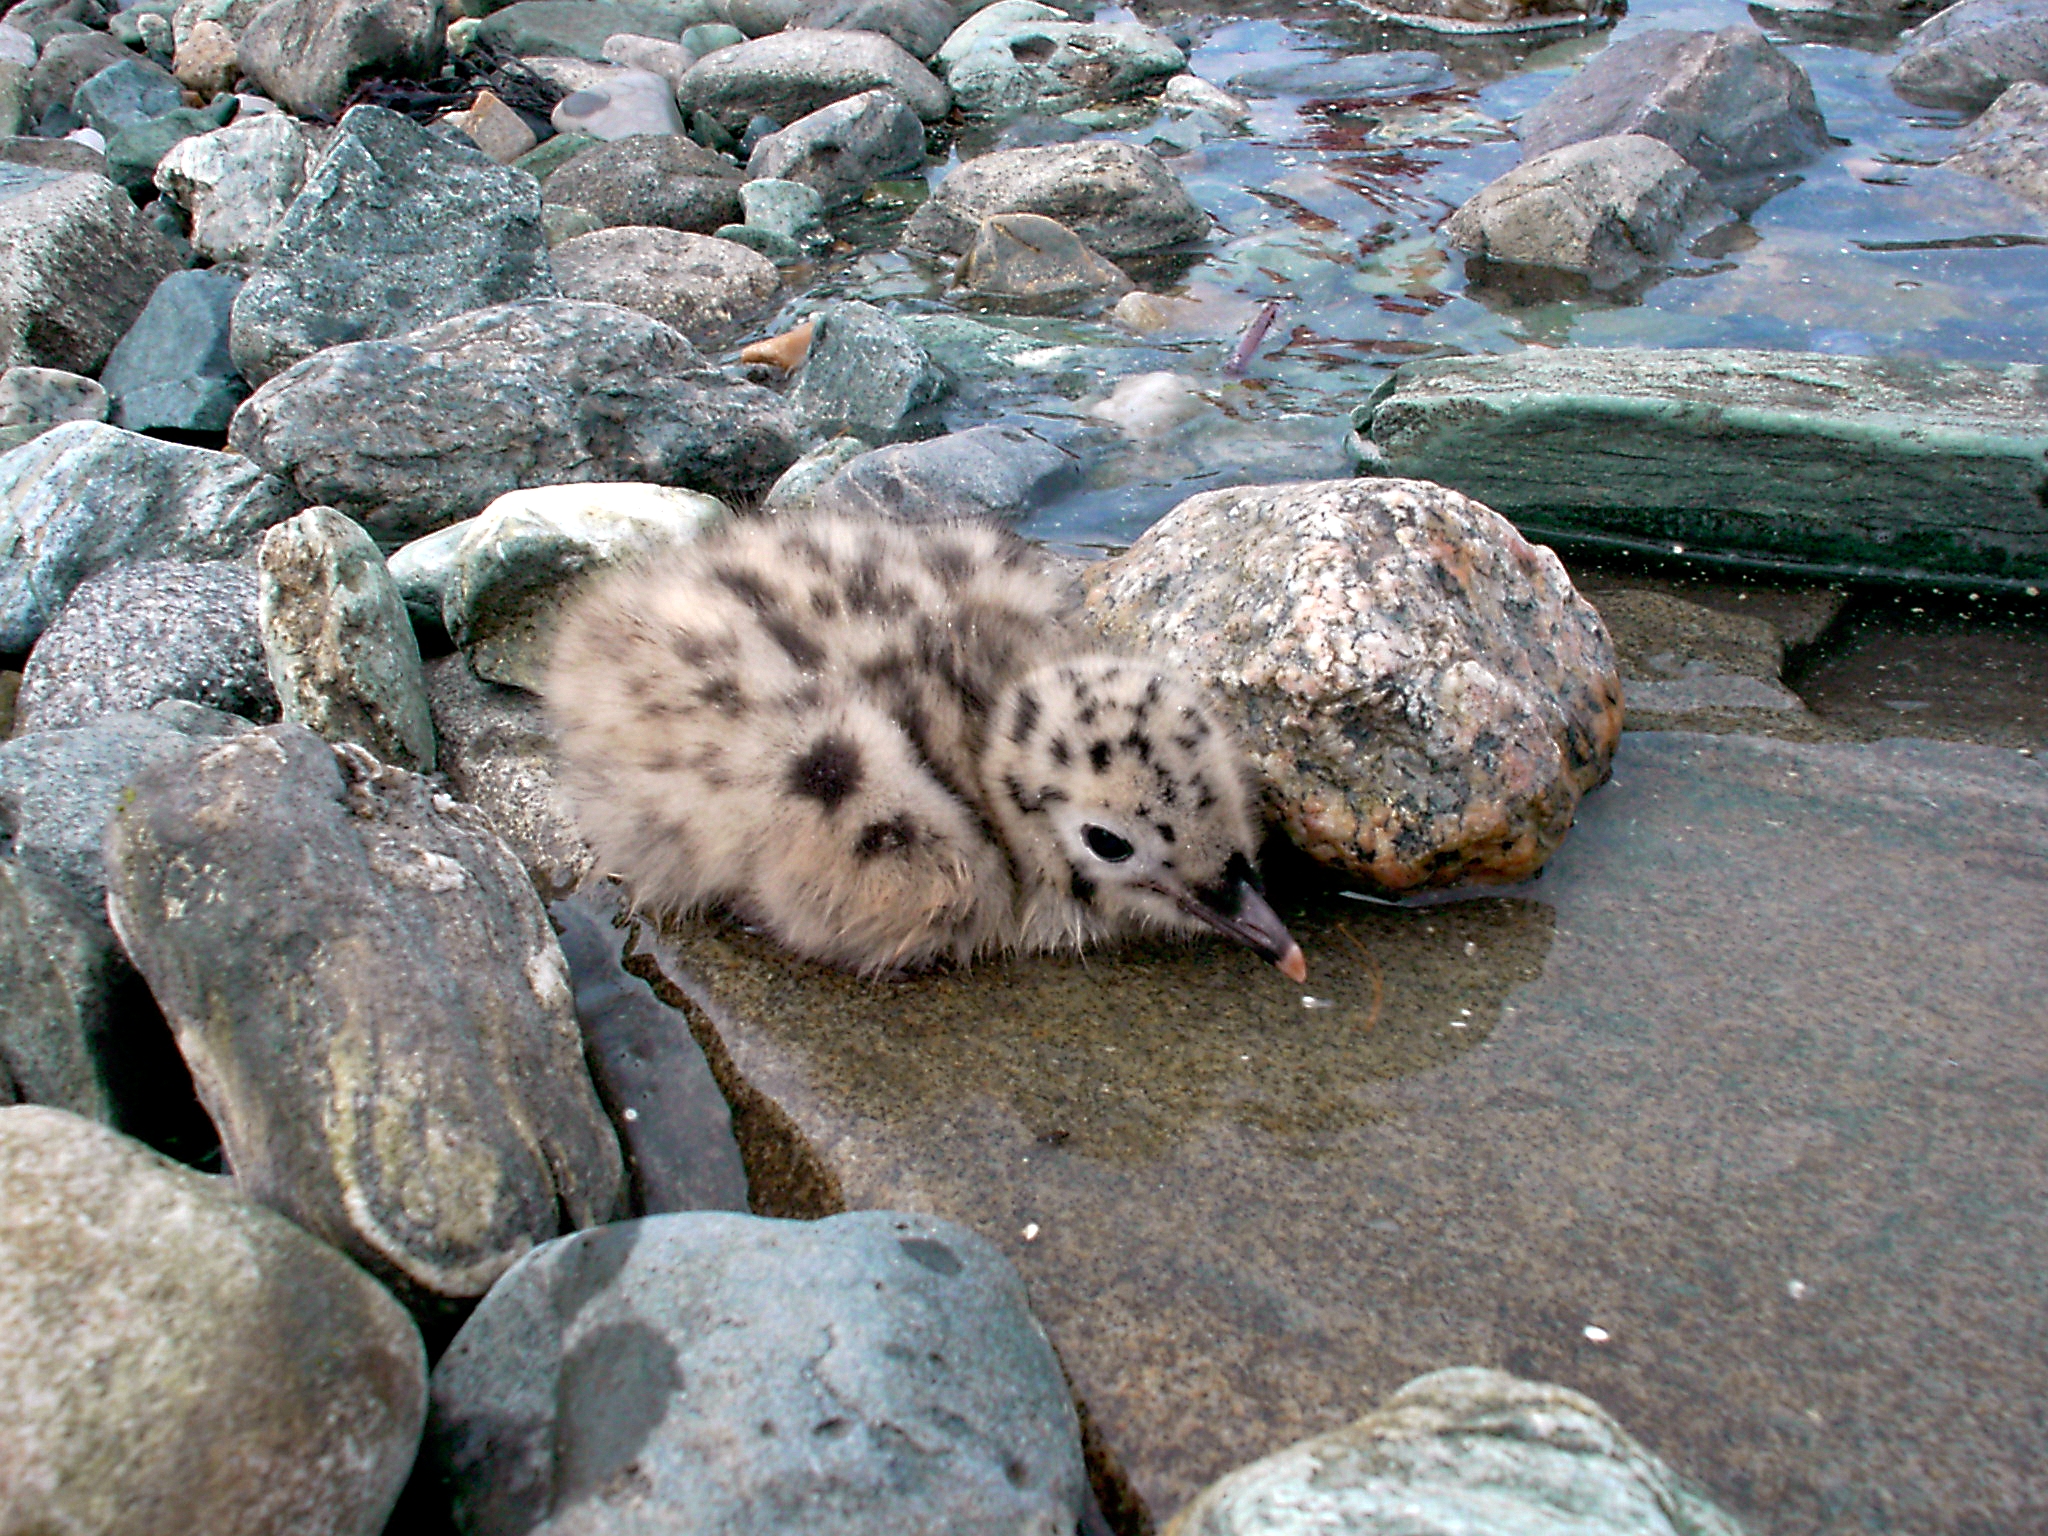 File:Baby gull.jpg - Wikimedia Commons